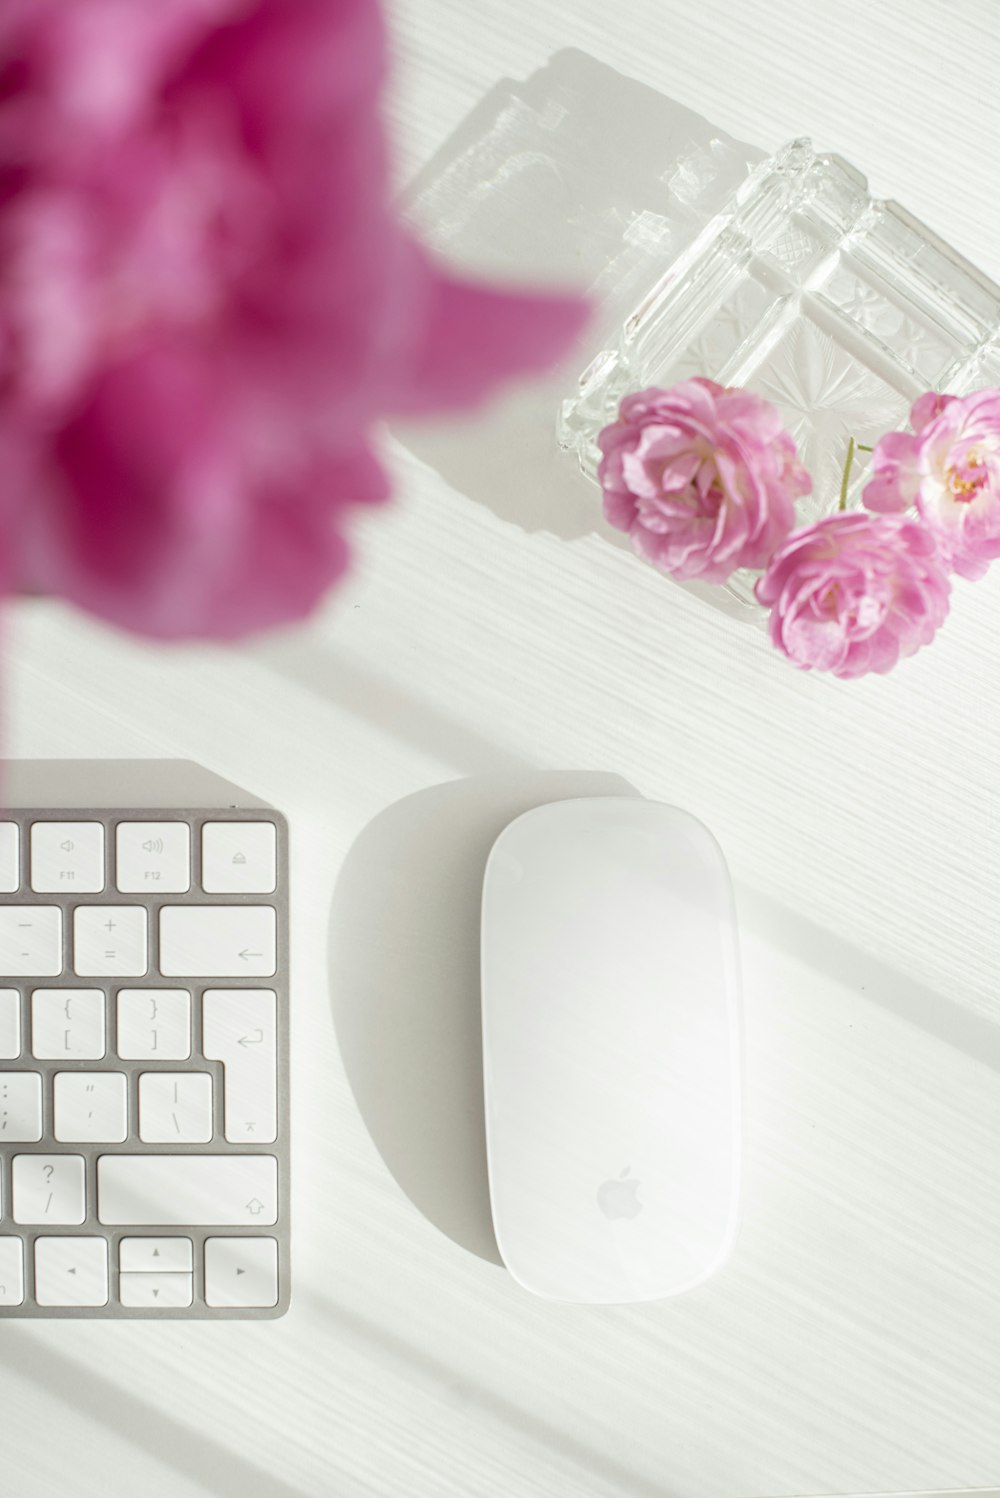 Weiße Apfel Magic Mouse neben rosa Blume auf weißem Holztisch